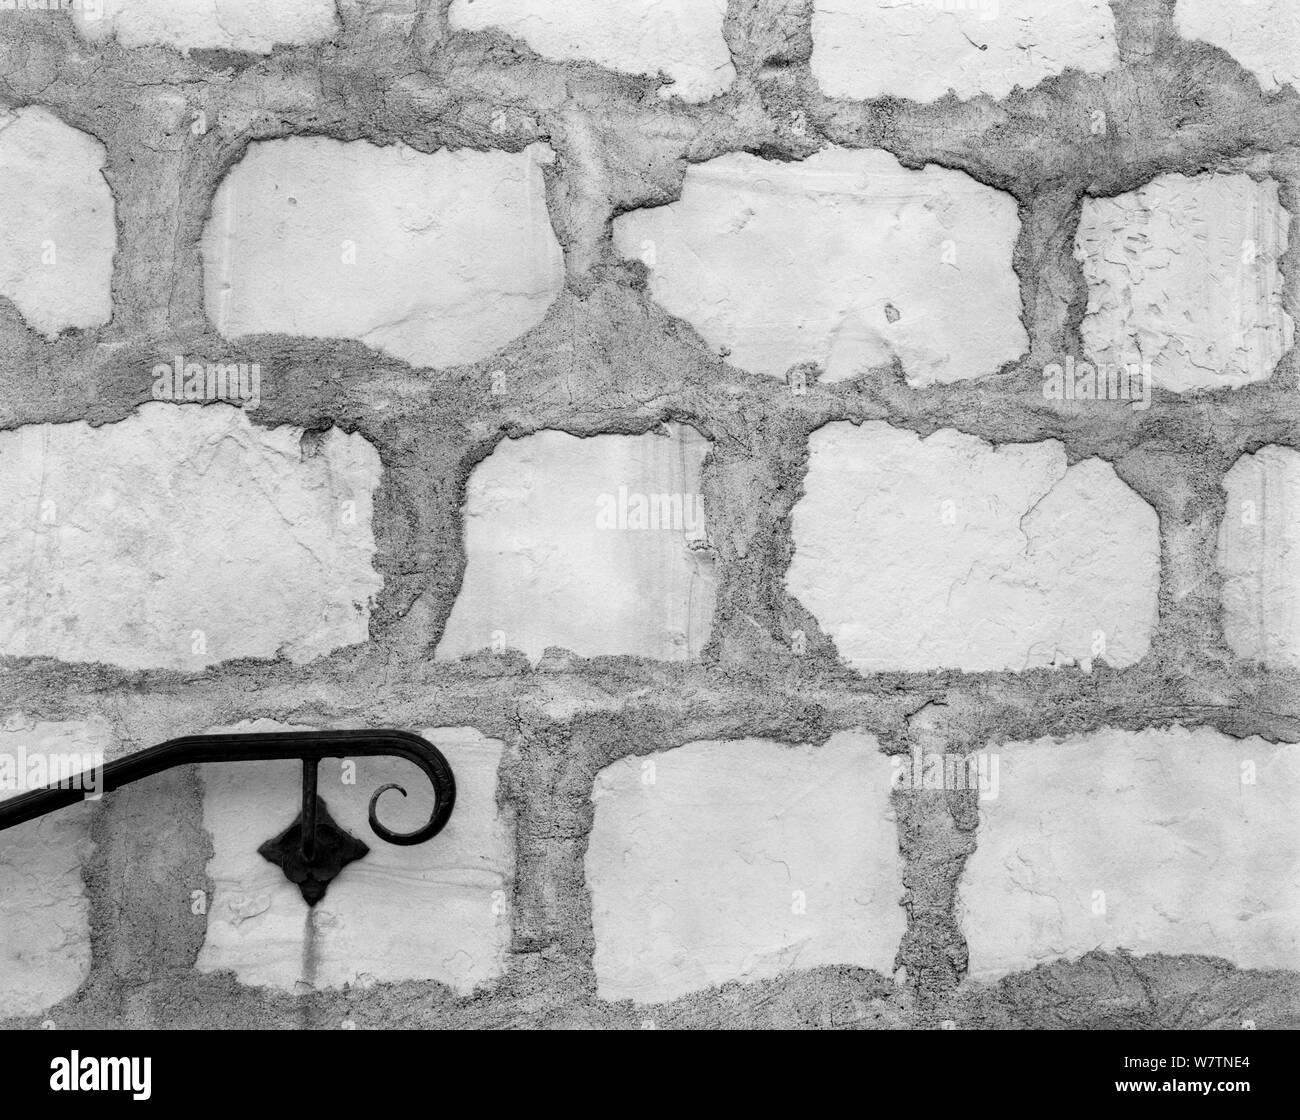 Black and white photograph of stone wall and hand rail at Mission, Santa Barbara, California, USA. Stock Photo